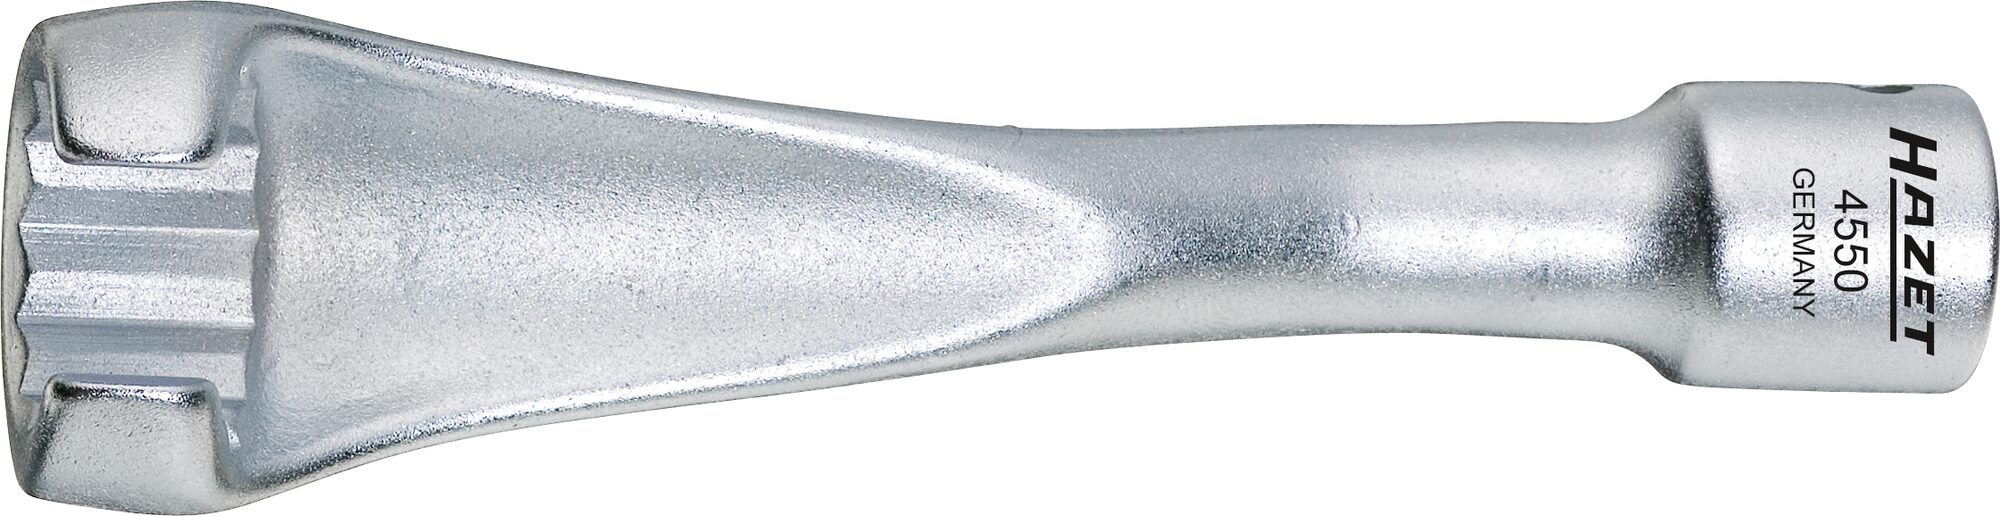 HAZET Einspritzleitungs-Schlüssel 4550 ∙ Vierkant10 mm (3/8 Zoll) ∙ Außen-Doppel-Sechskant Profil ∙ 17 mm